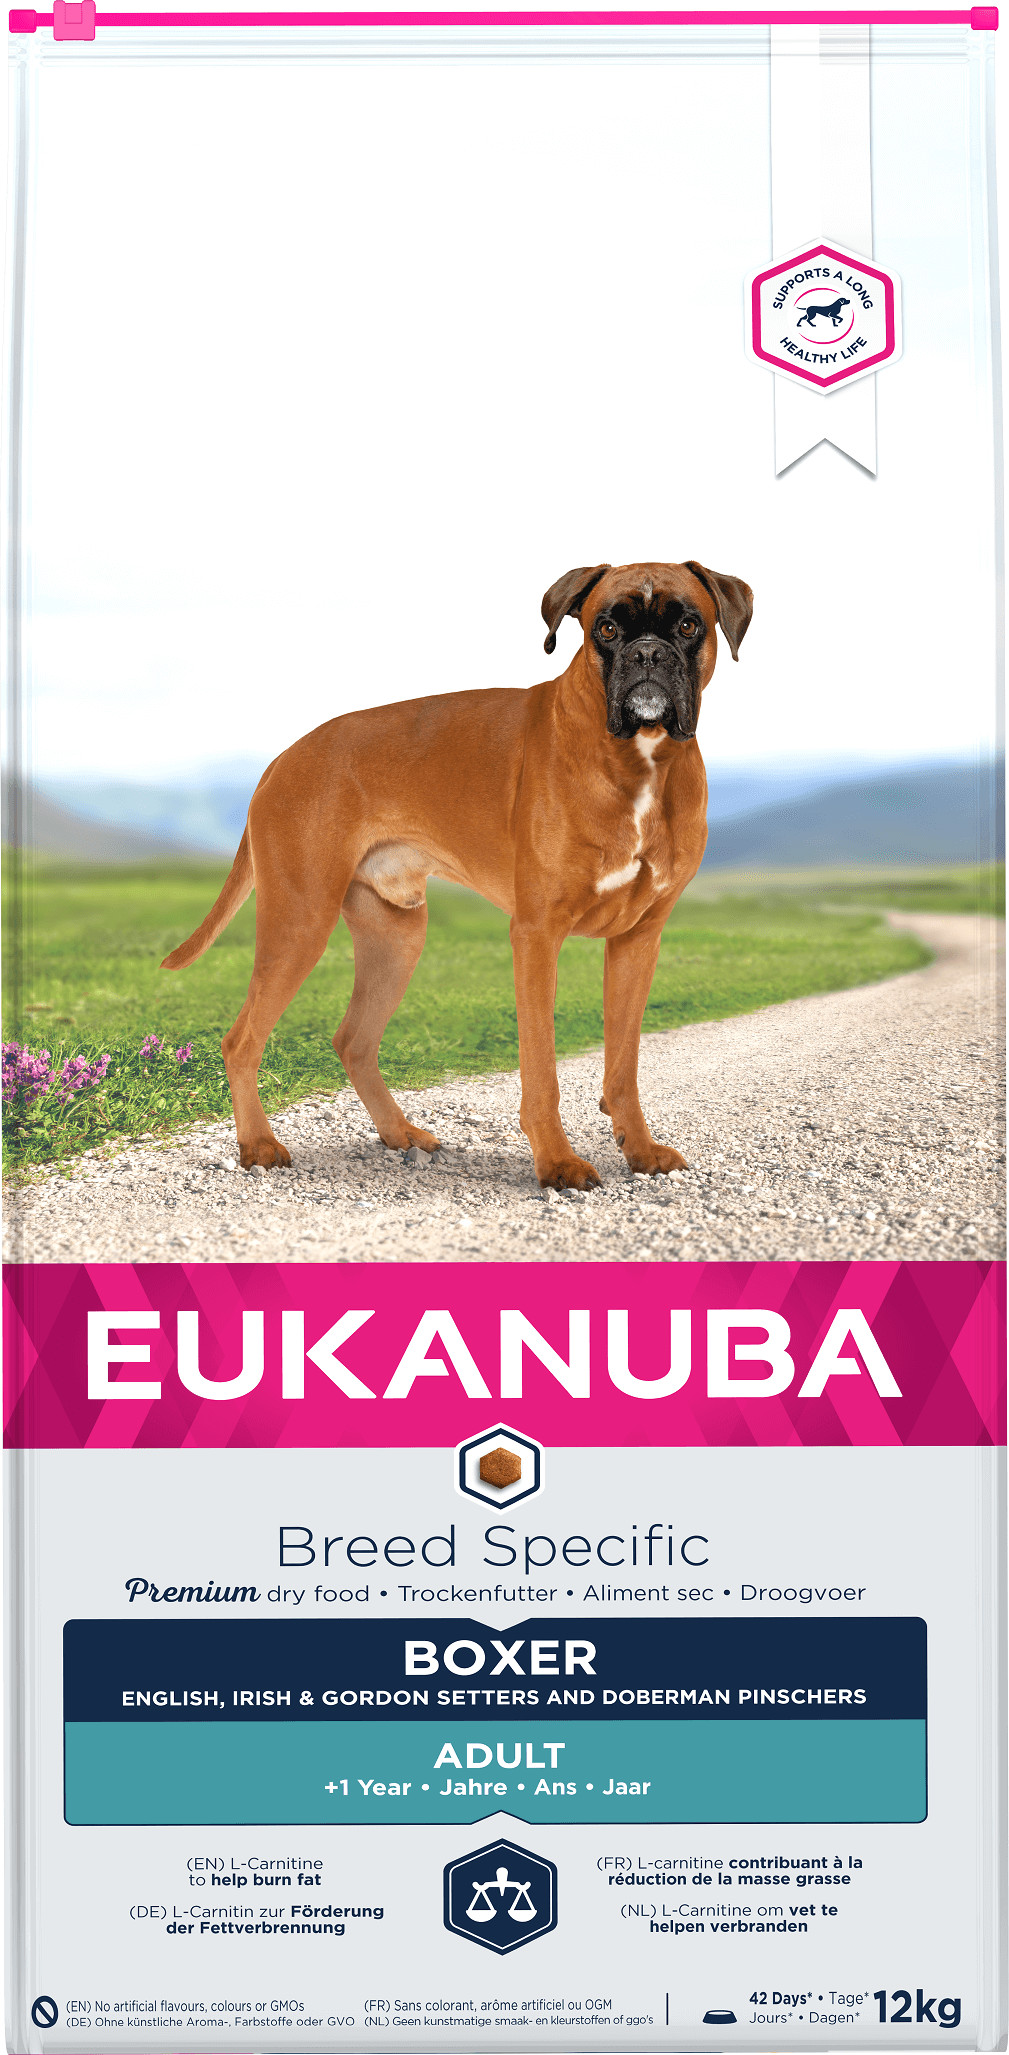 Eukanuba Breed Specific Boxer pour chien